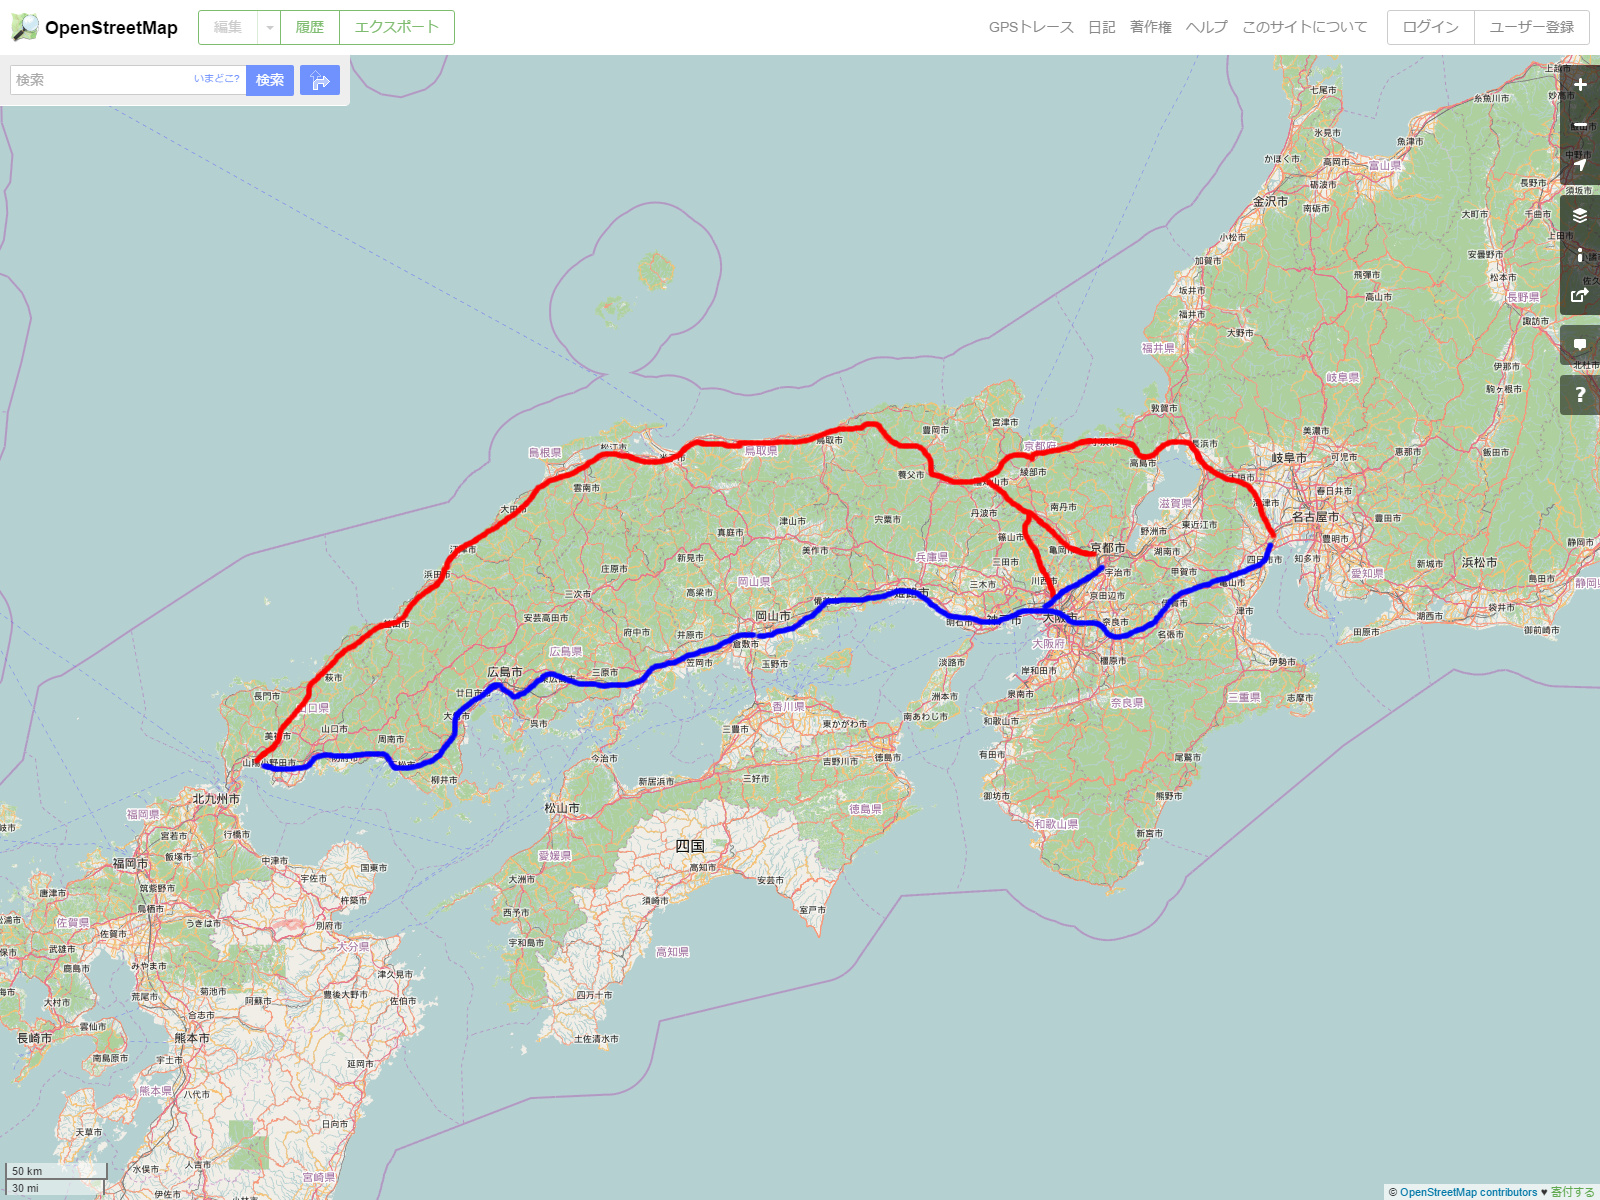 Rcp193の道路についてのブログ 道路以外もあります 無料道路だけを使って東海 関西 九州へ向かうとき なぜ遠回りでも山陰 ルートを使ったほうが良いのか